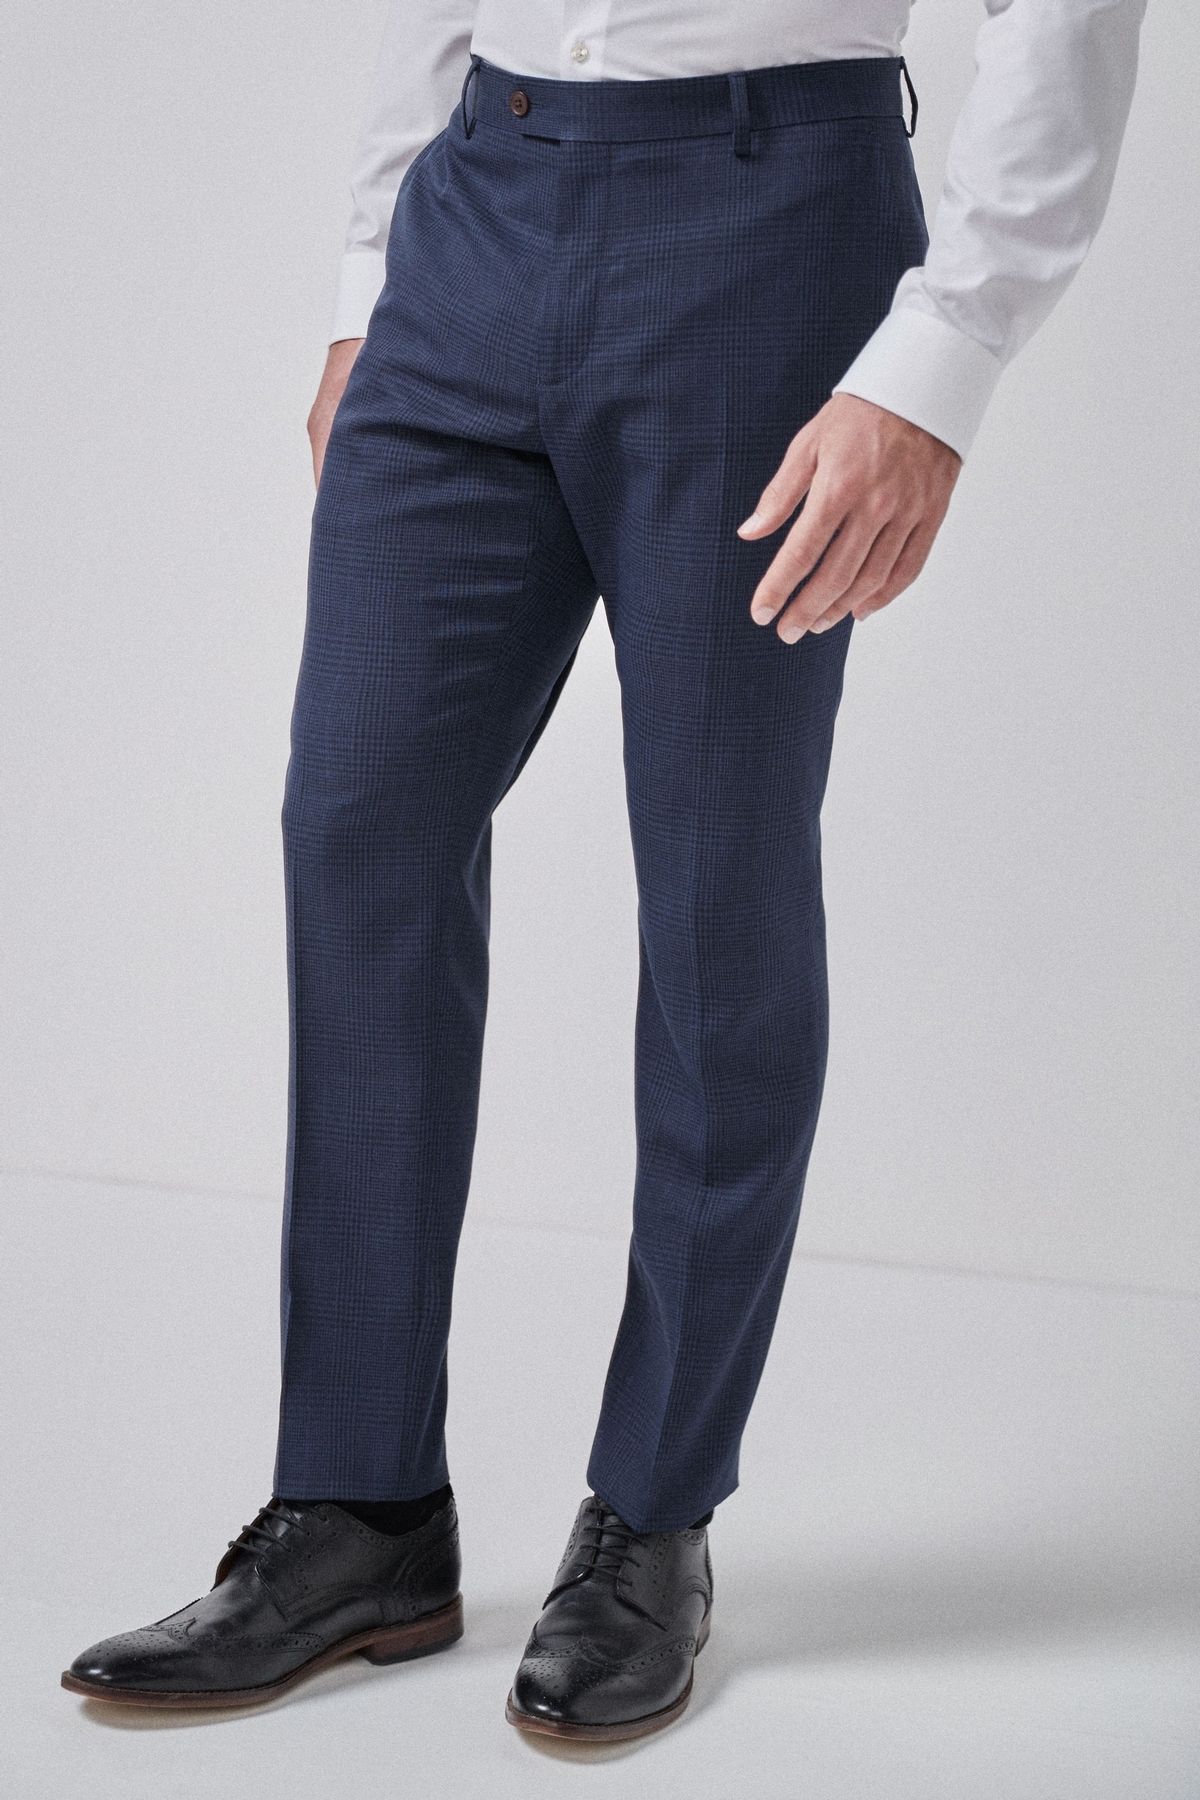 NEXT Check Suit: Trousers Blue Men Trousers|akgalleria.com